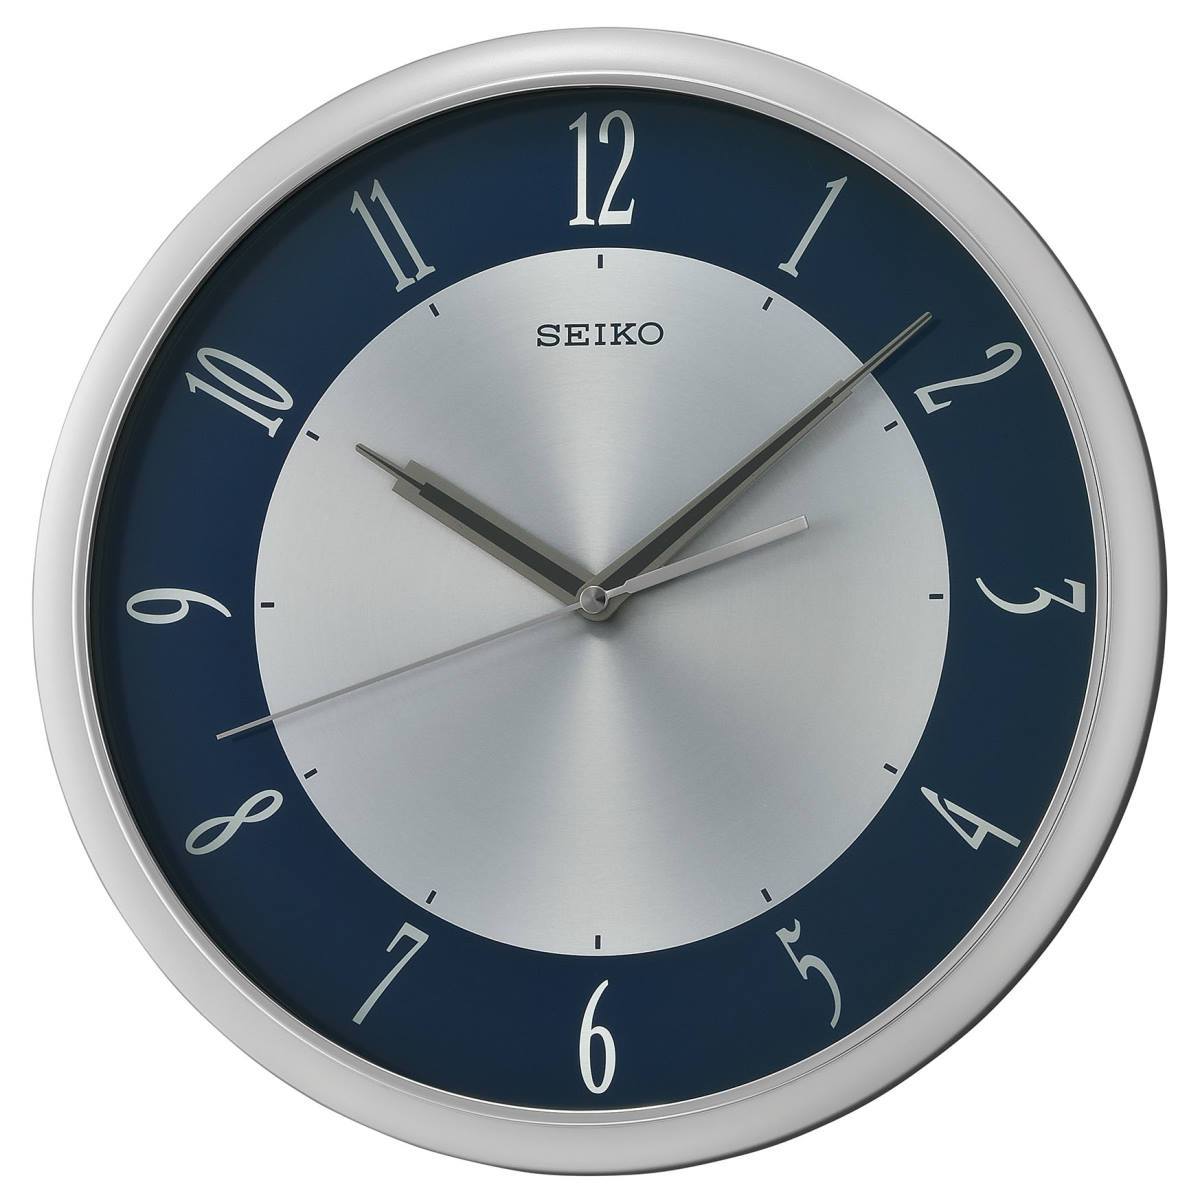 Настольные часы Seiko qhl054sn. Настенные часы Seiko qhl077wn. Qxh102b часы Seiko. Часы SN 084-G.